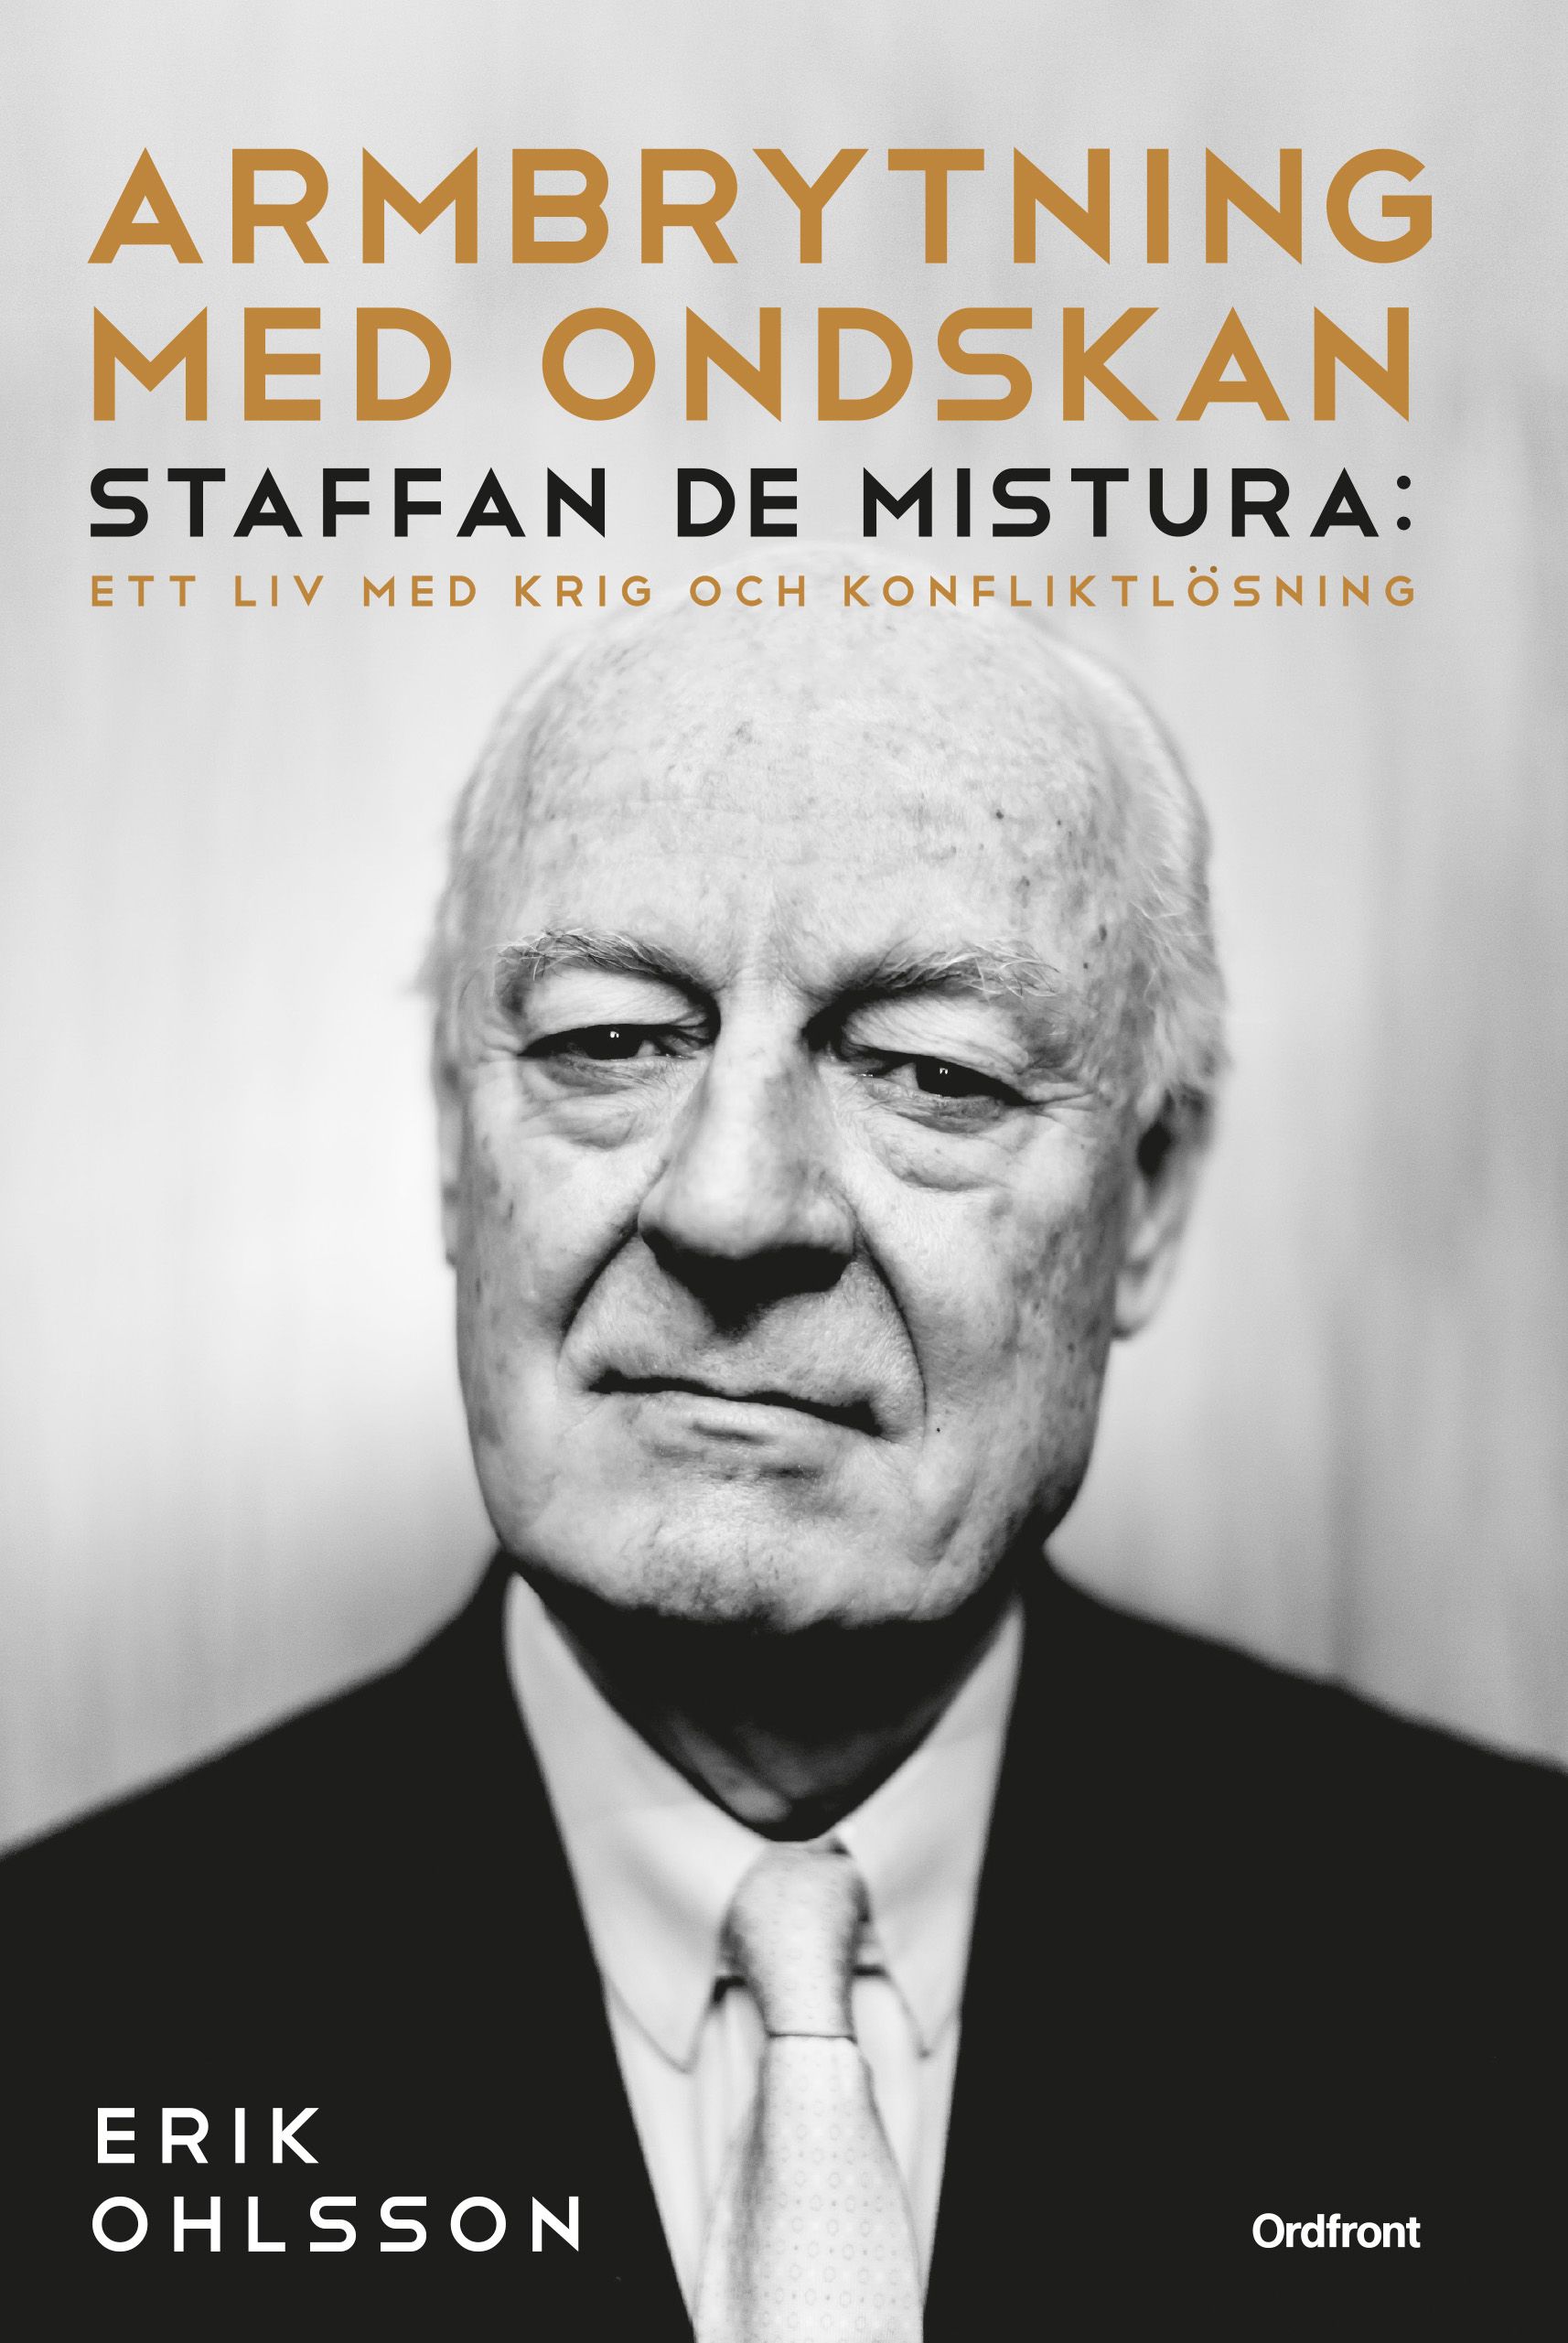 Armbrytning med ondskan : Staffan de Mistura: Ett liv med krig och konfliktlösning, e-bok av Erik Ohlsson